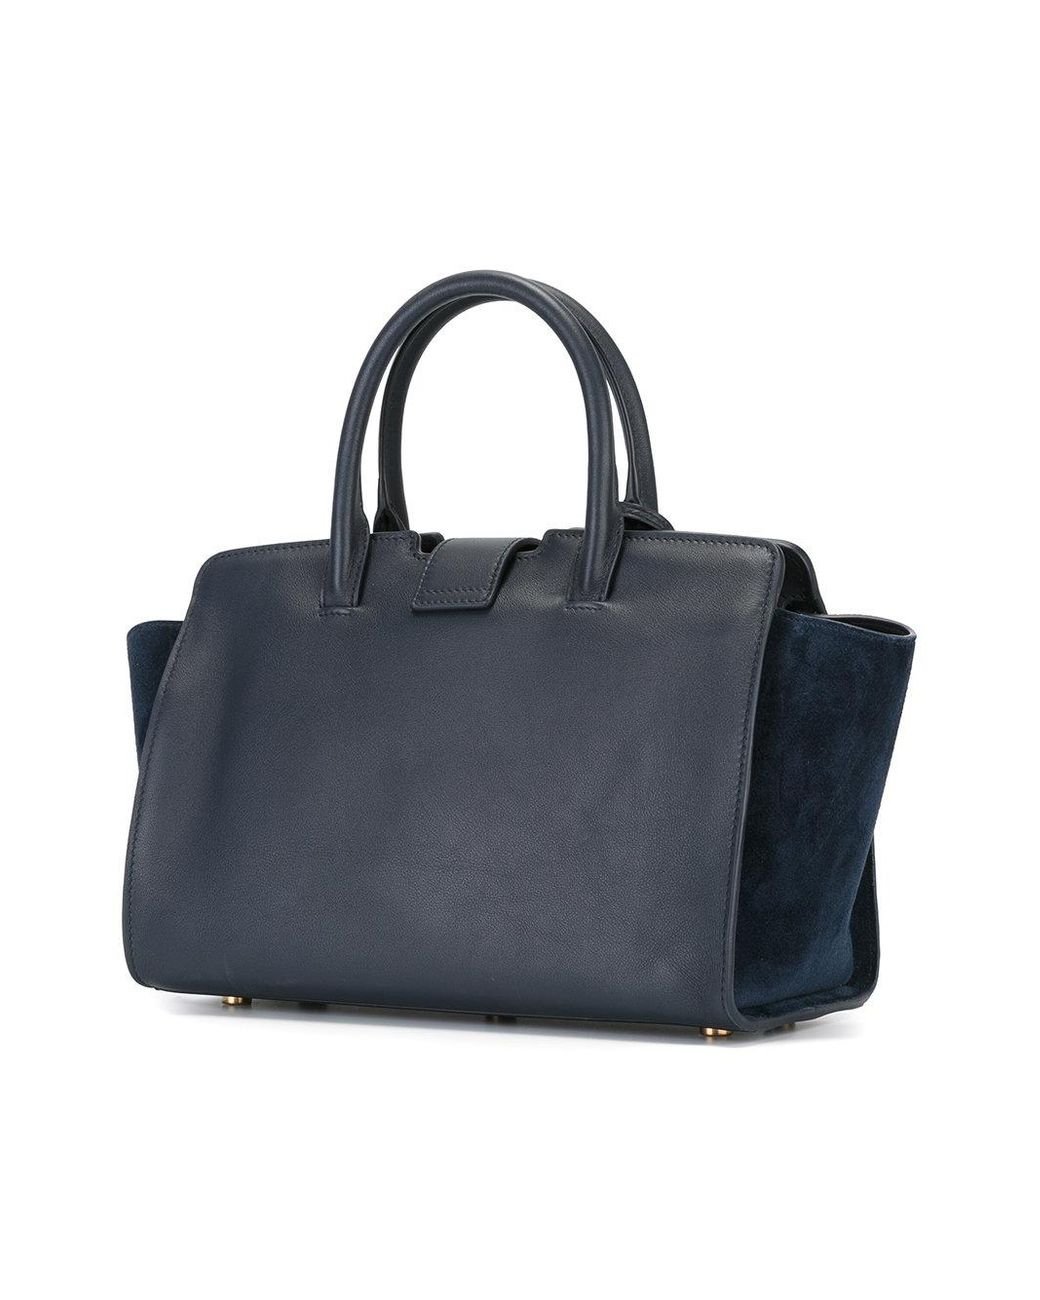 Saint Laurent Downtown Bag In Light Blue Leather Auction